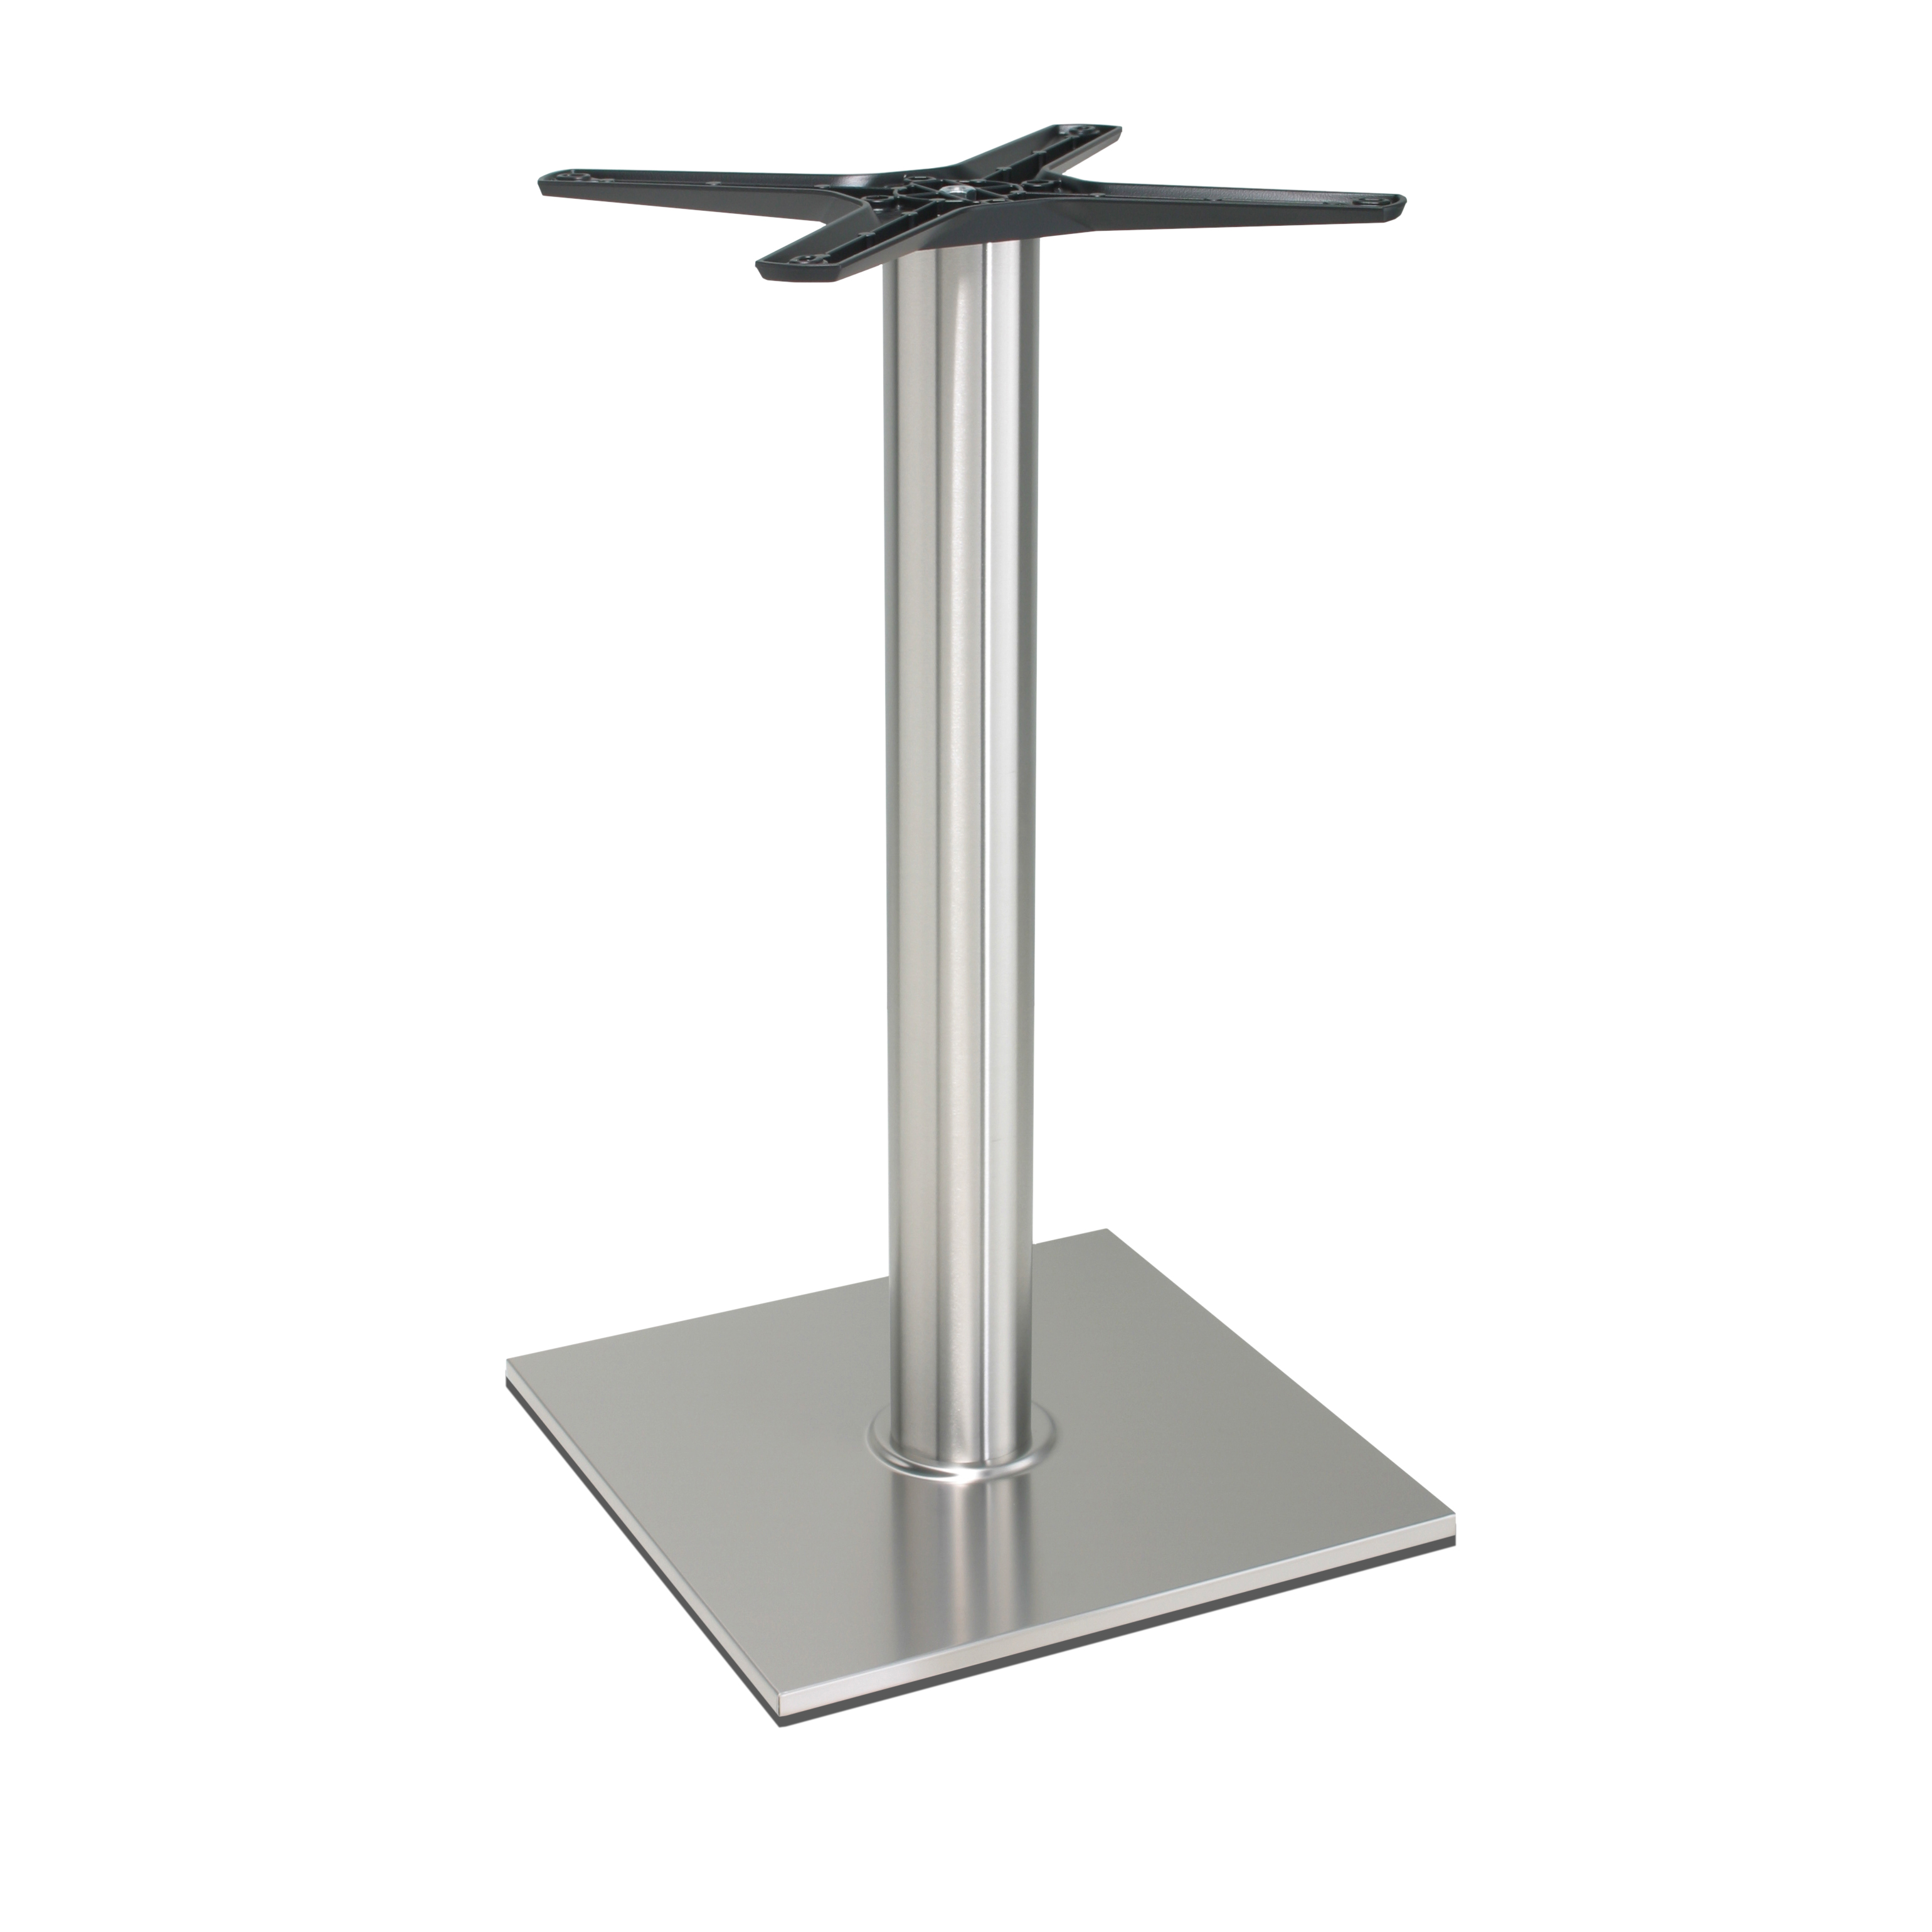 Tischgestell Edelstahl P400inox - rostfrei - satiniert - matt - quadratisch